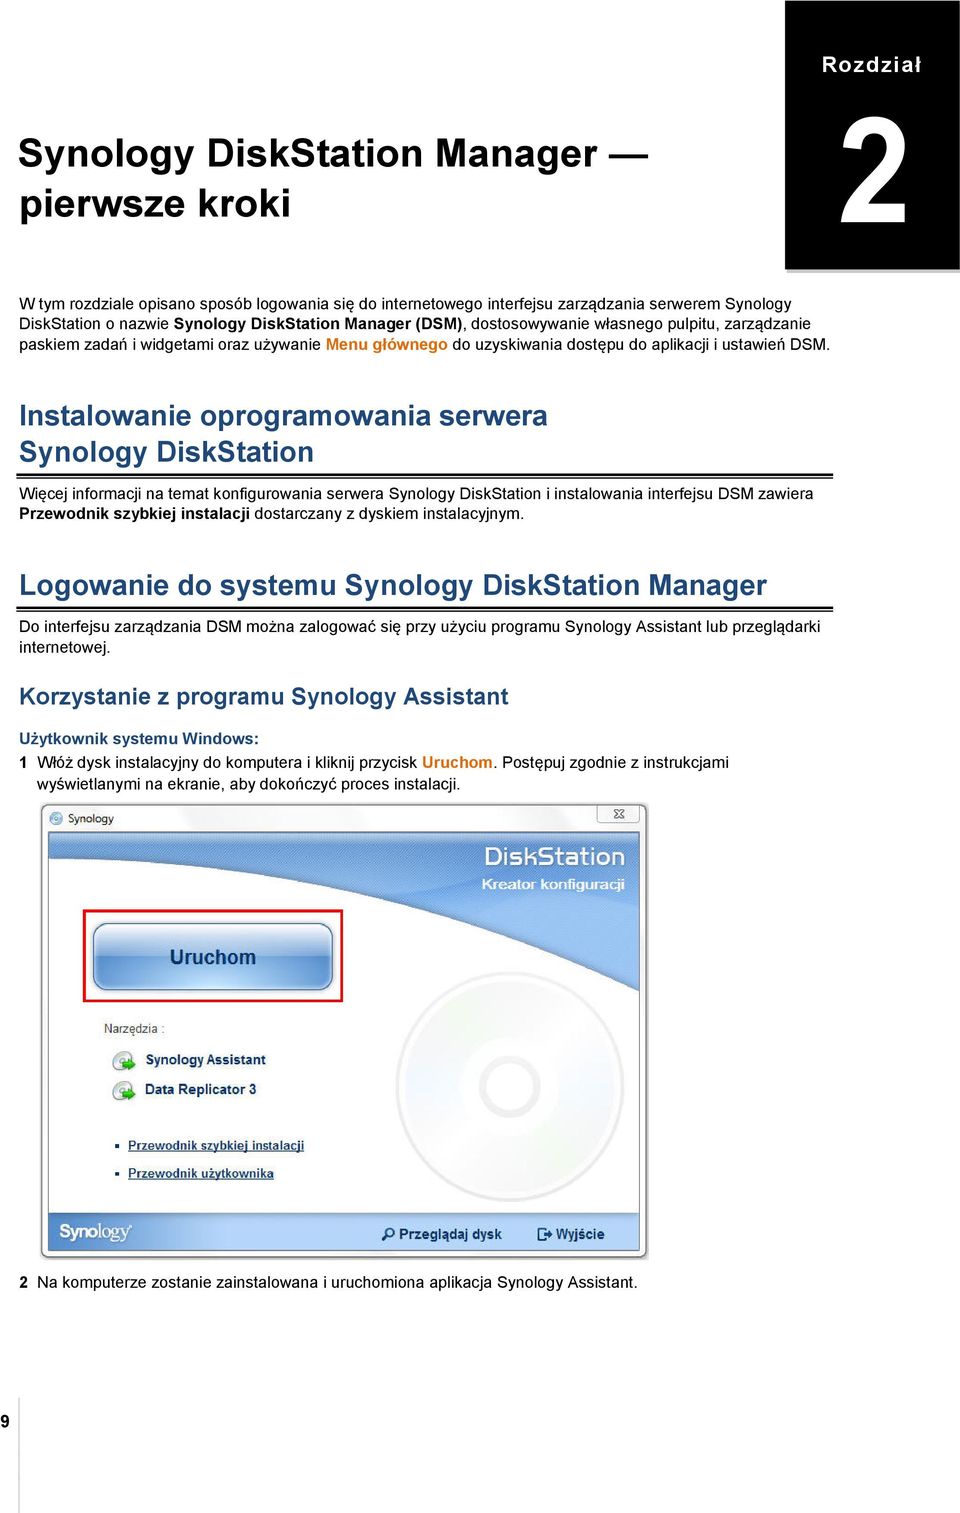 Instalowanie oprogramowania serwera Synology DiskStation Więcej informacji na temat konfigurowania serwera Synology DiskStation i instalowania interfejsu DSM zawiera Przewodnik szybkiej instalacji